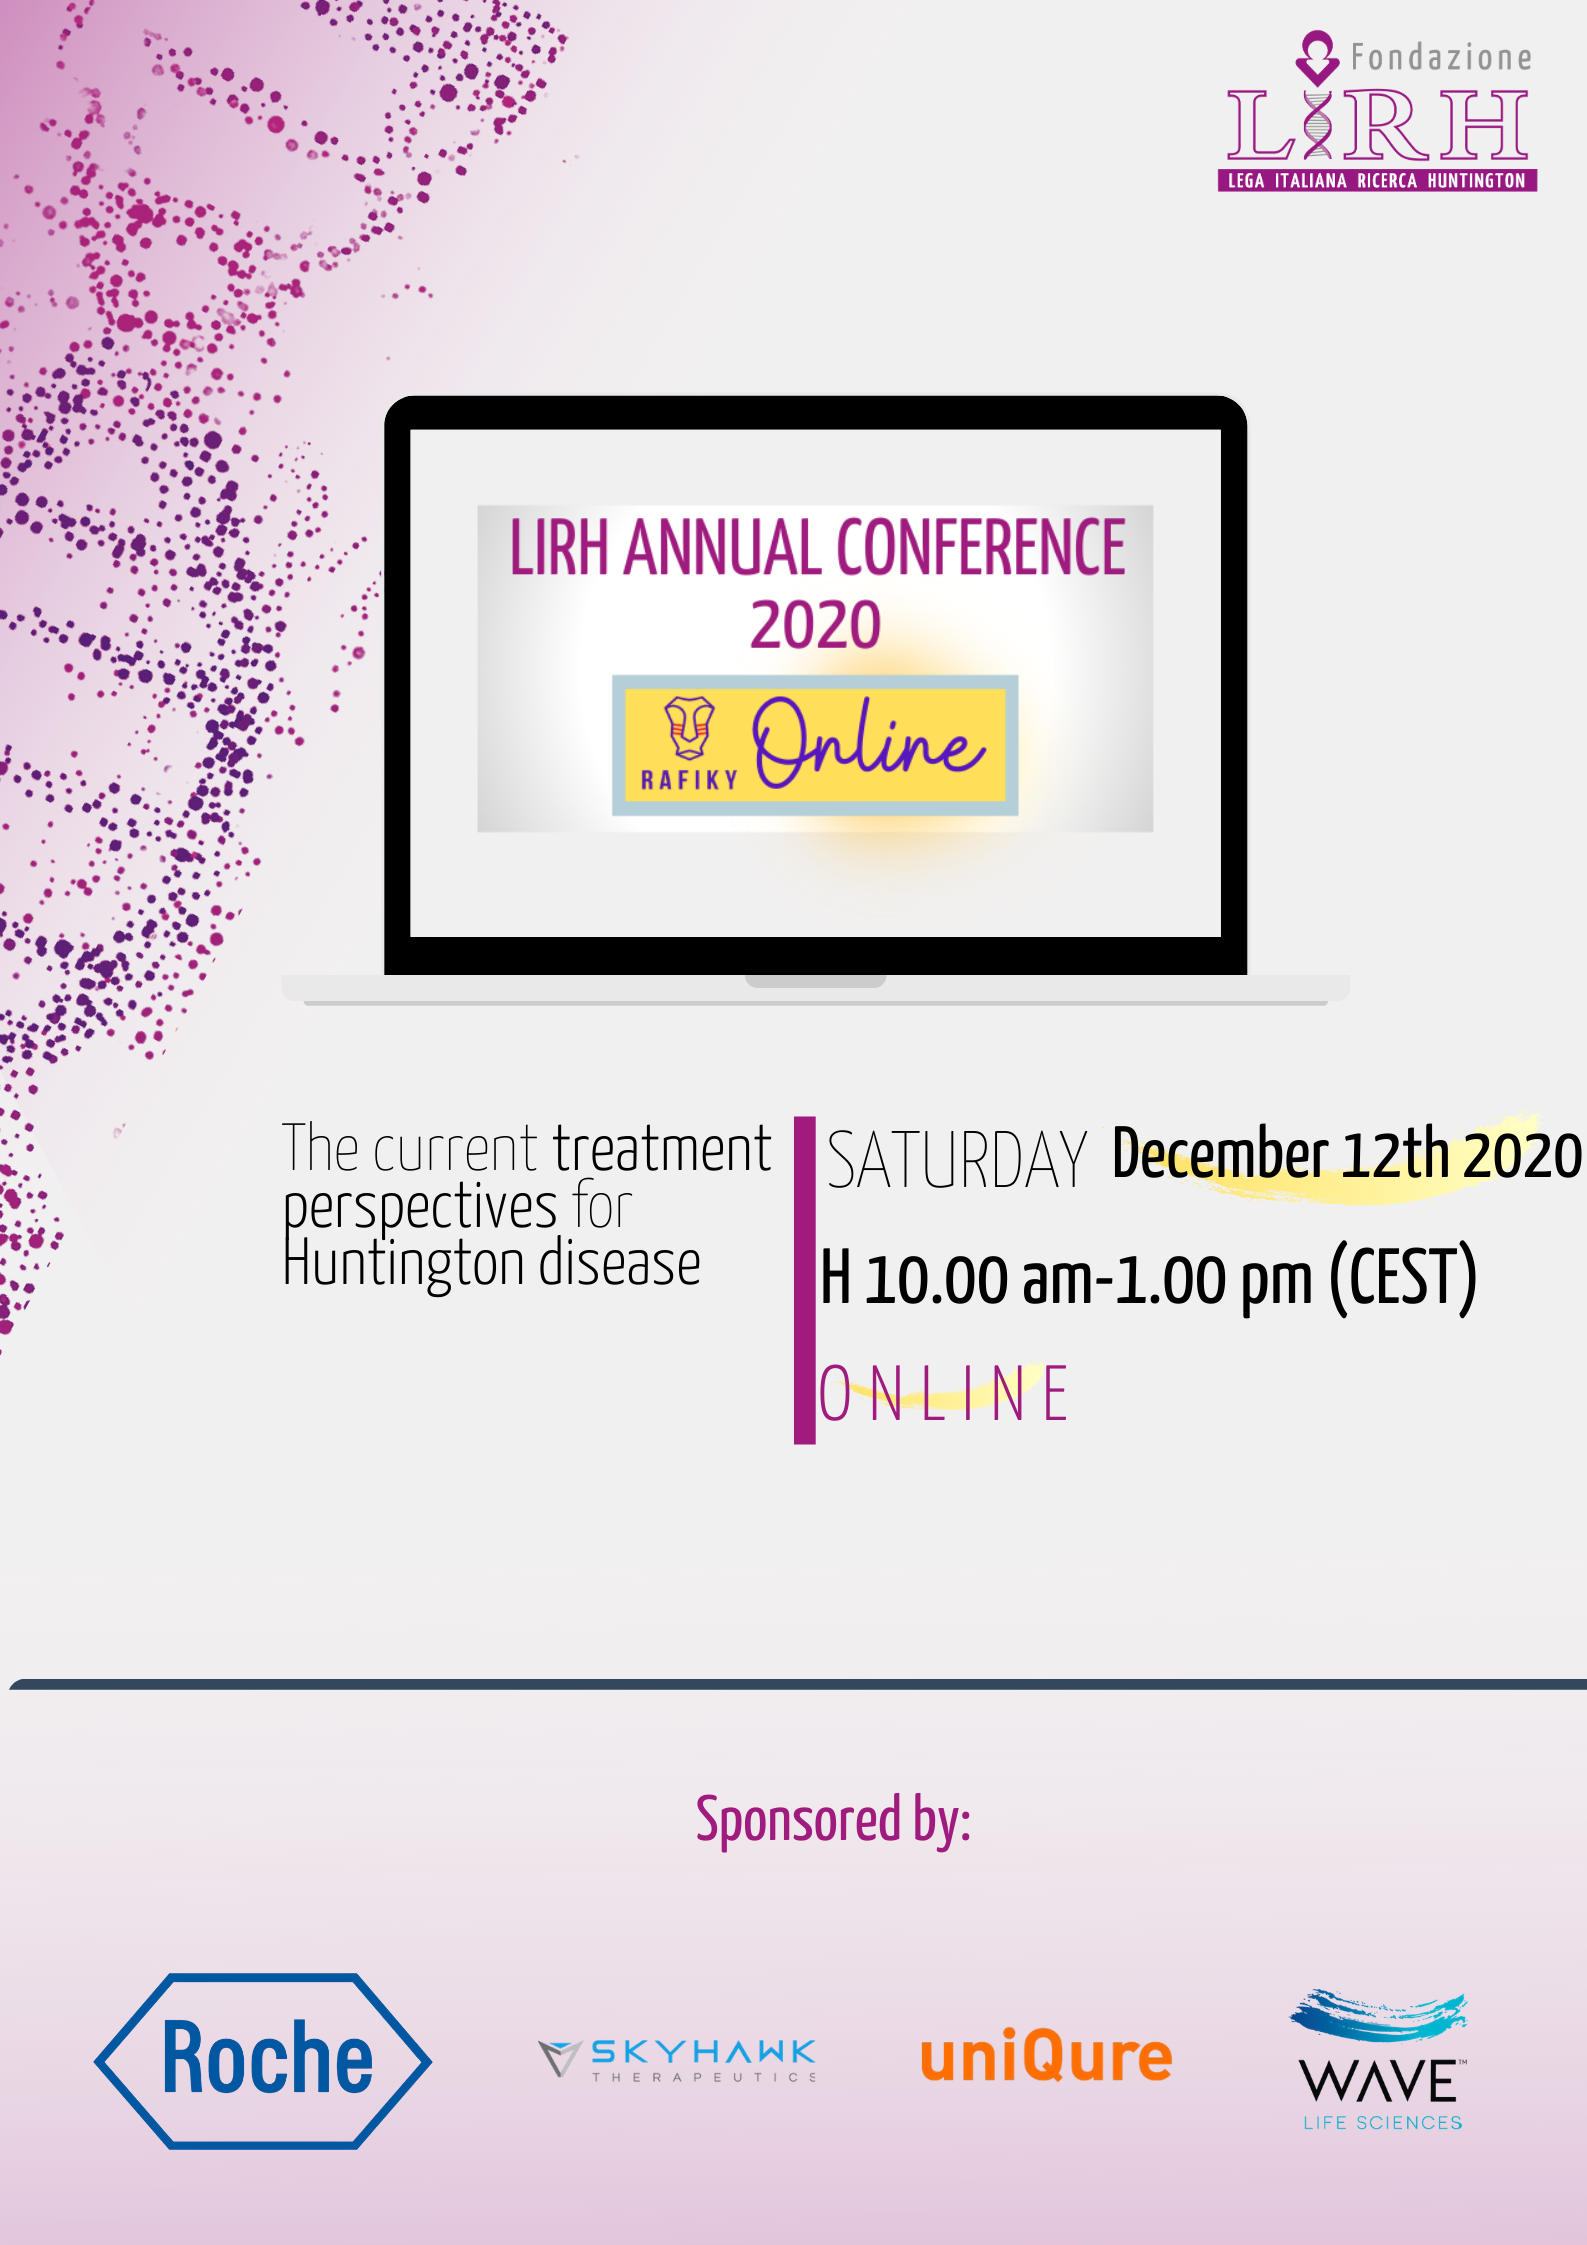 Convegno Annuale LIRH 2020- Le attuali prospettive di cura per la malattia di Huntington